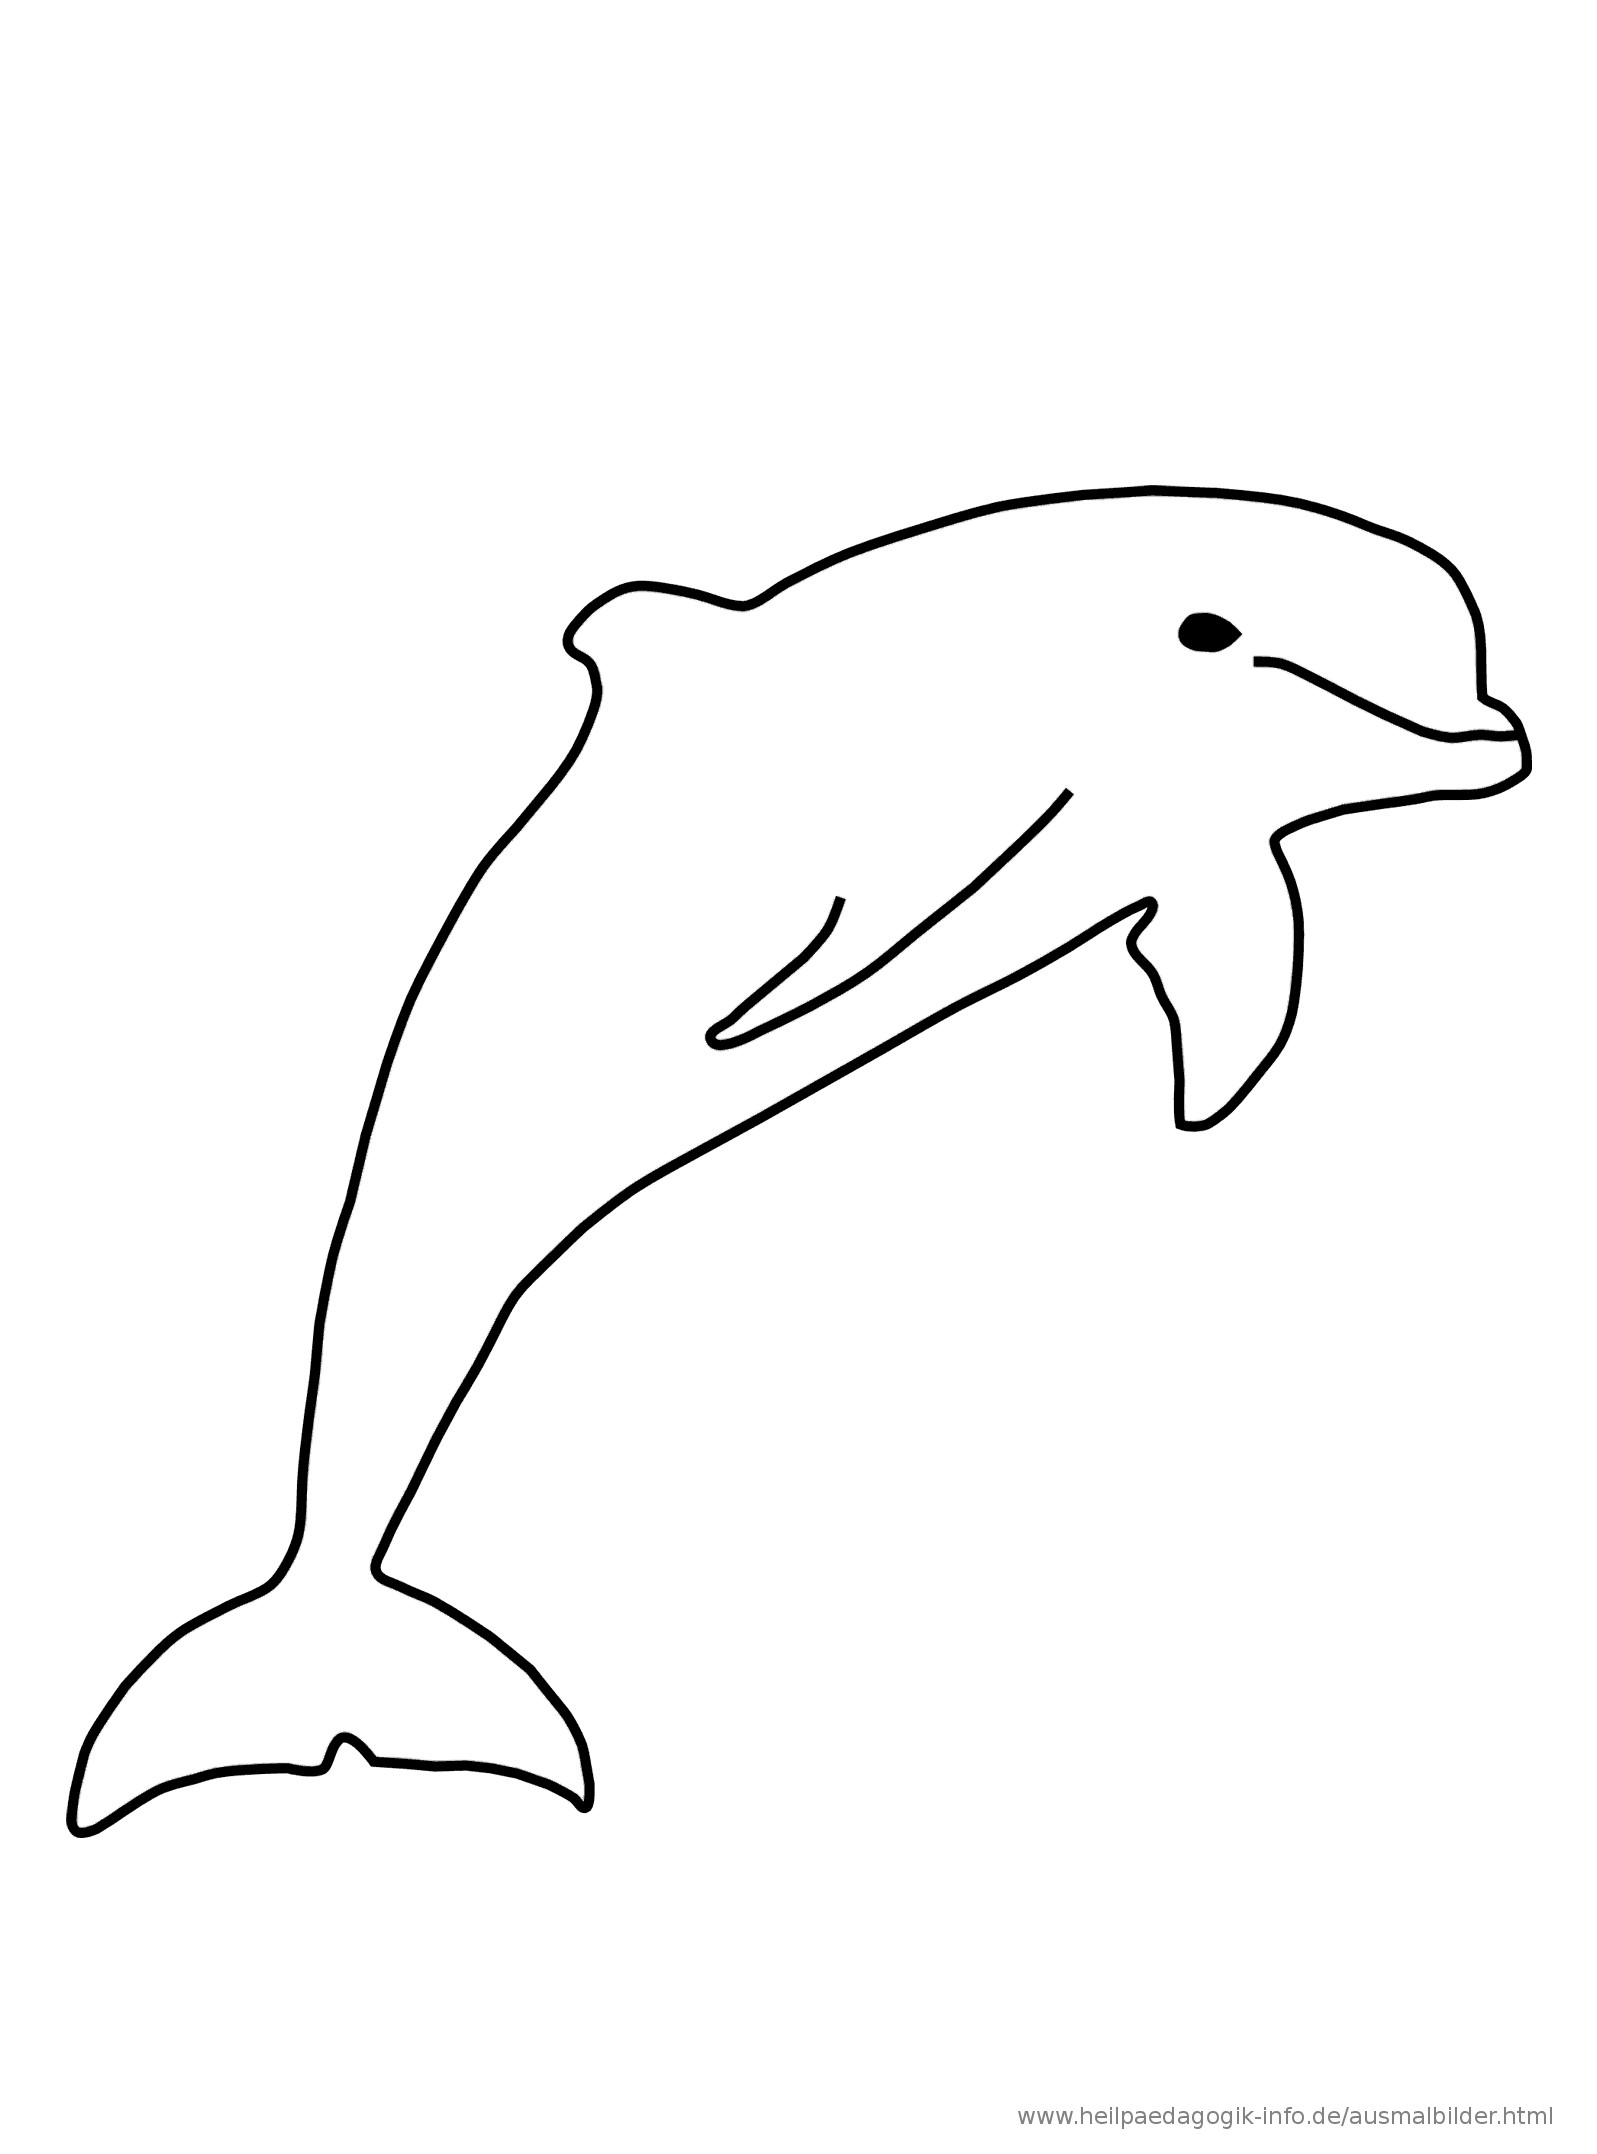 Malvorlagen Delfin
 Einzigartig Malvorlagen Delfin Bild